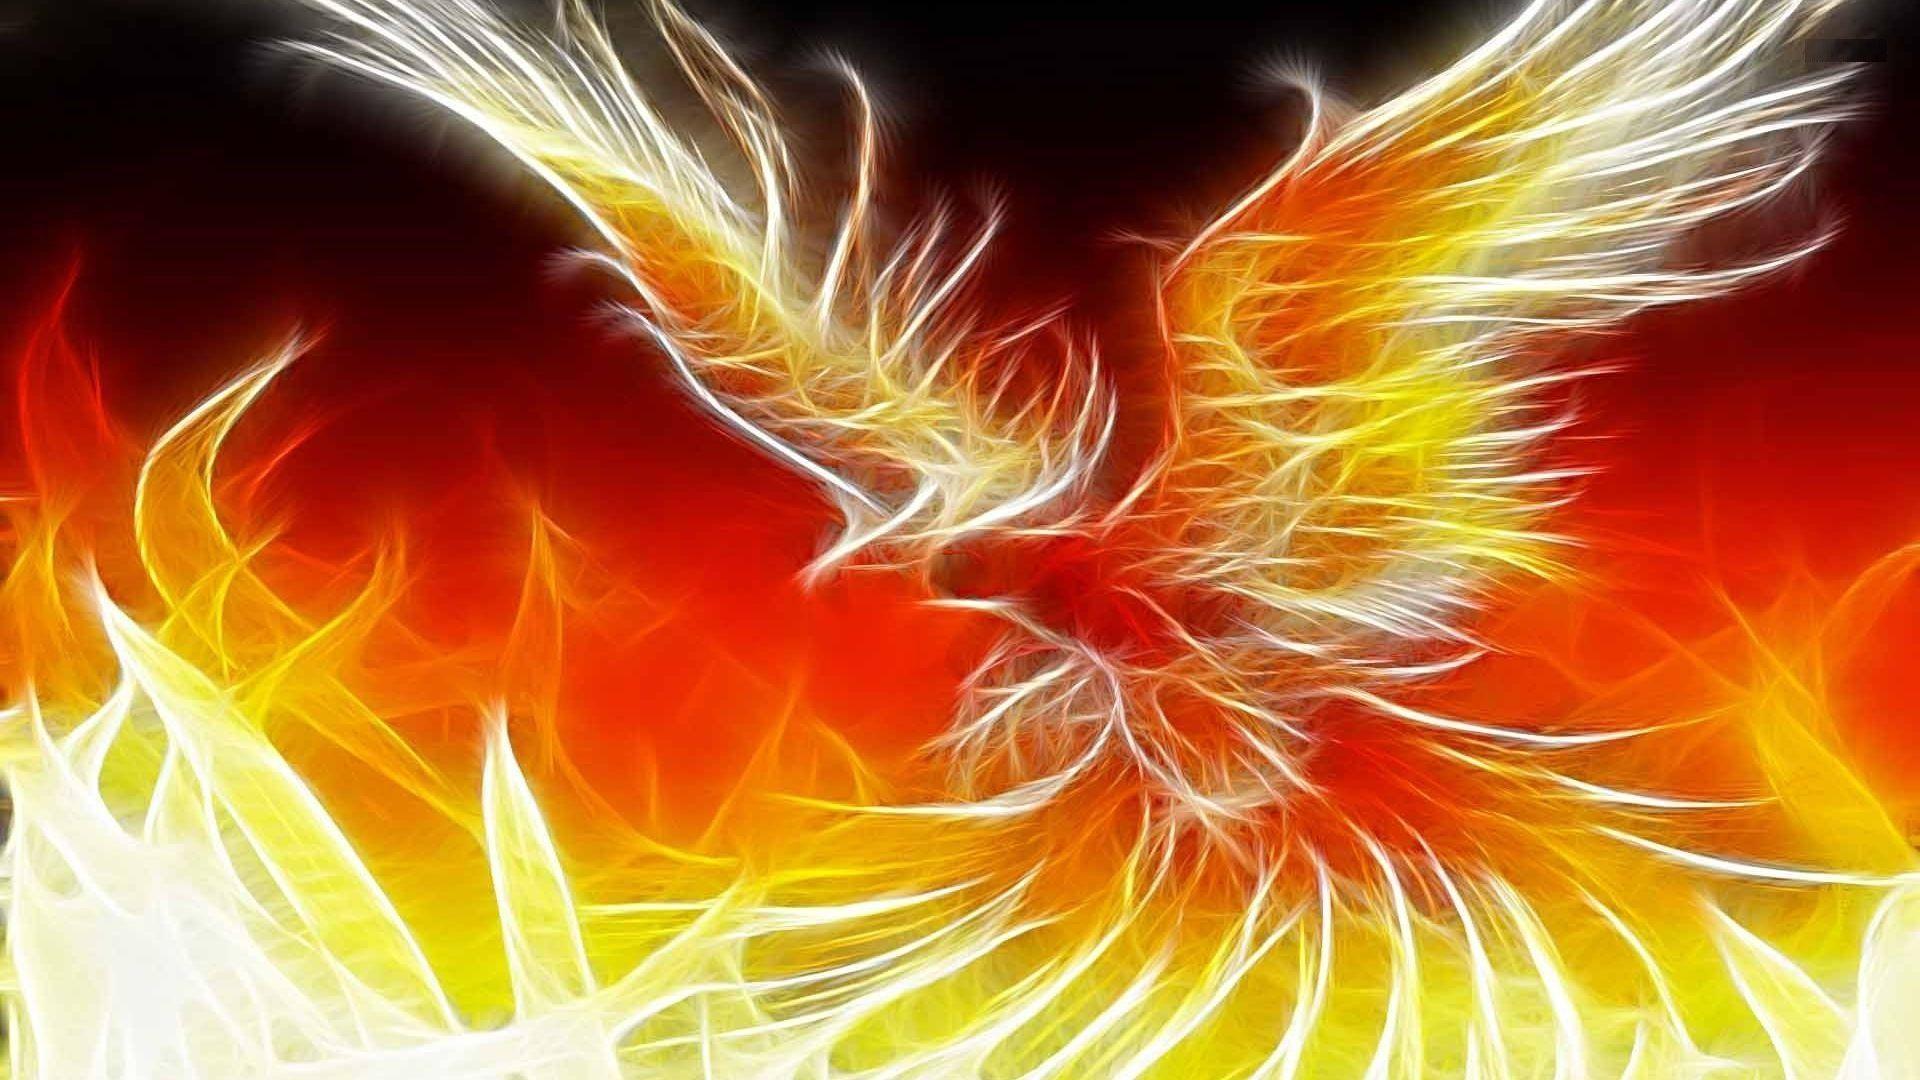 Phoenix Bird Flame Fire Abstract HD Wallpaper 001